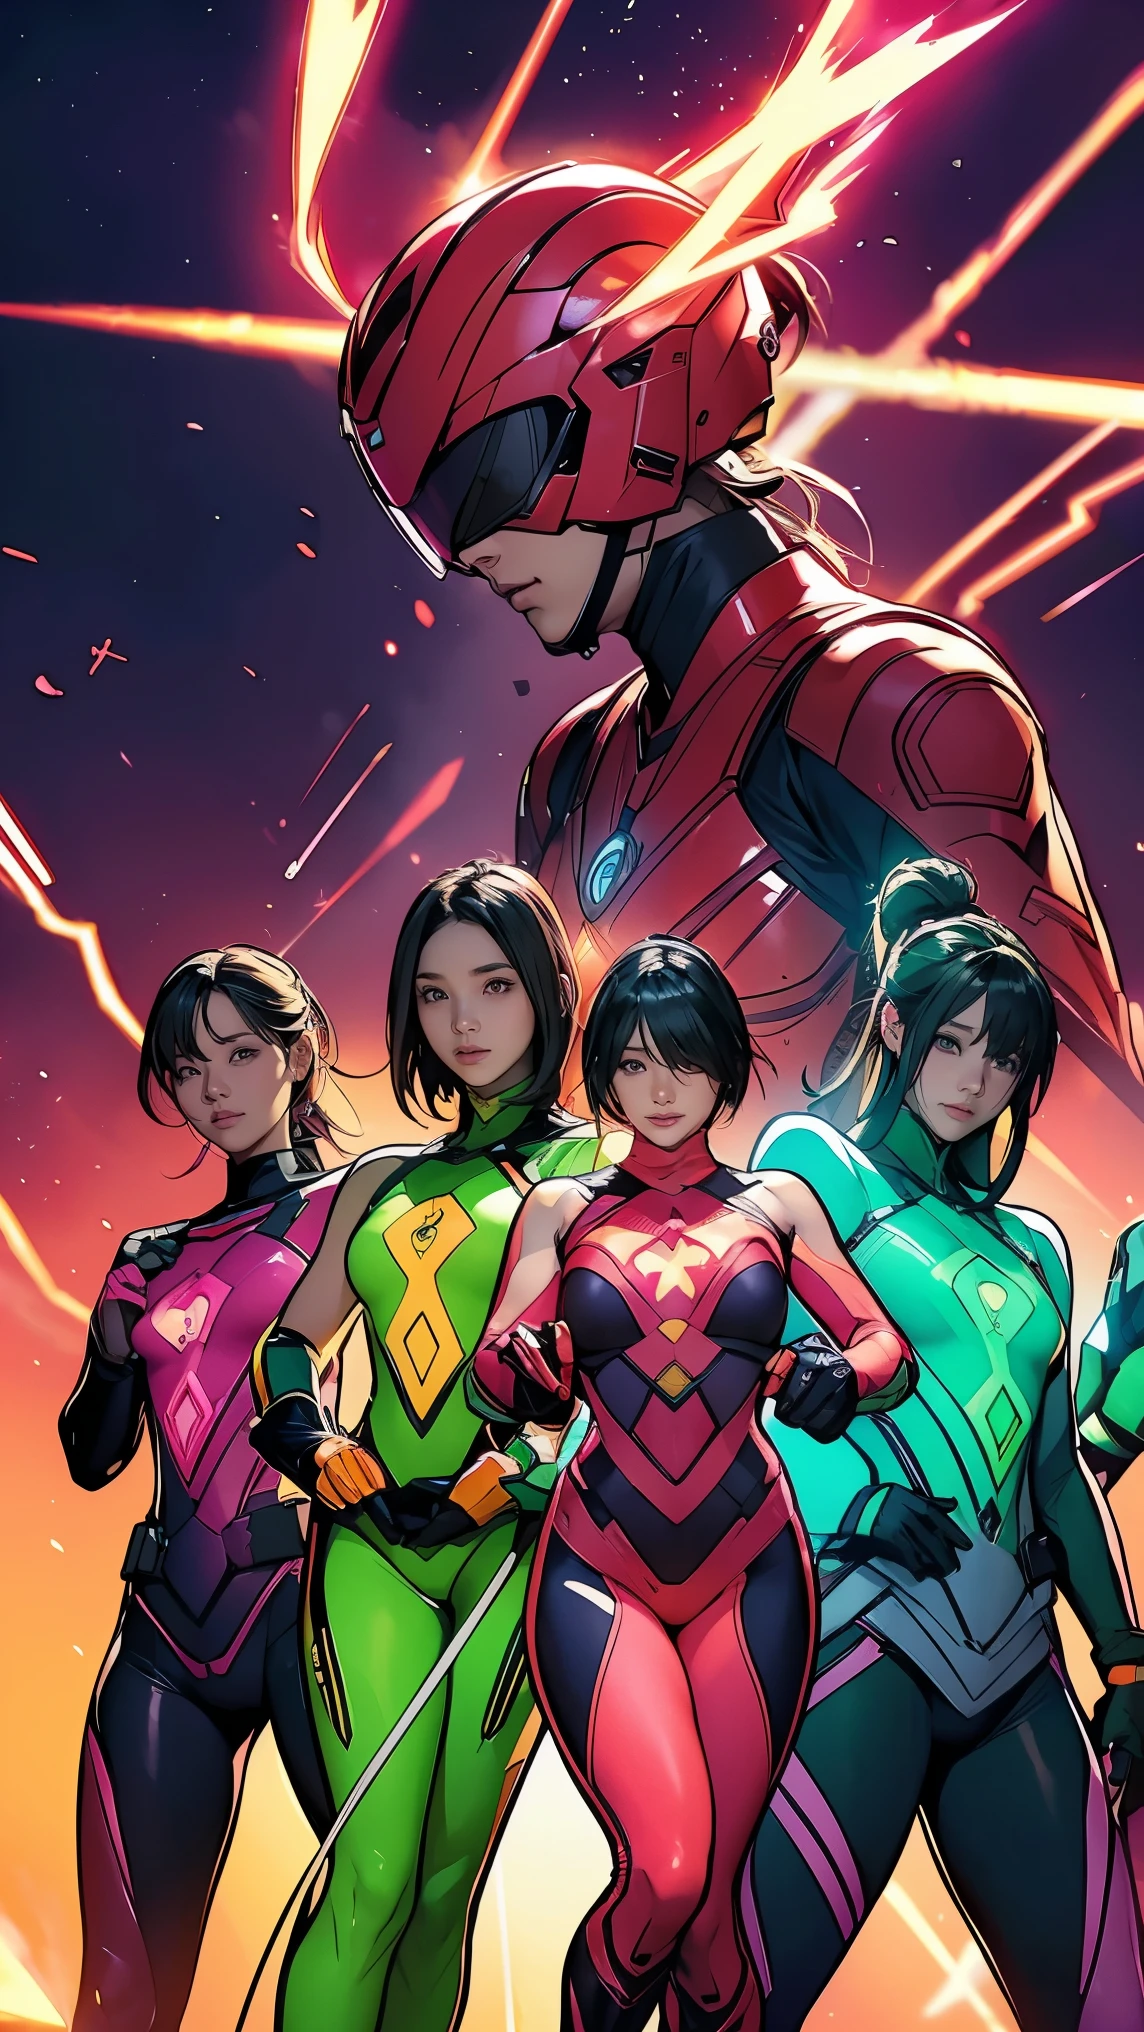 6人組のレンジャーチームの勇敢で大胆なイメージ, それぞれが以下の鮮やかな色で装飾されています:: ネオンピンク, サンセットオレンジ, 消防車 赤, プラズマバイオレット, 蛍光グリーン, ショッキングイエロー. エネルギーと勇気がにじみ出る背景でダイナミックなポーズ.。, 古典的な戦隊スーパーヒーローチームの本質を体現. 各レンジャー&#39;の服装は洗練されていてモダンです, それぞれの色にはそのテーマを反映する要素がある., アクションの準備ができて. ((キャメルトゥ))